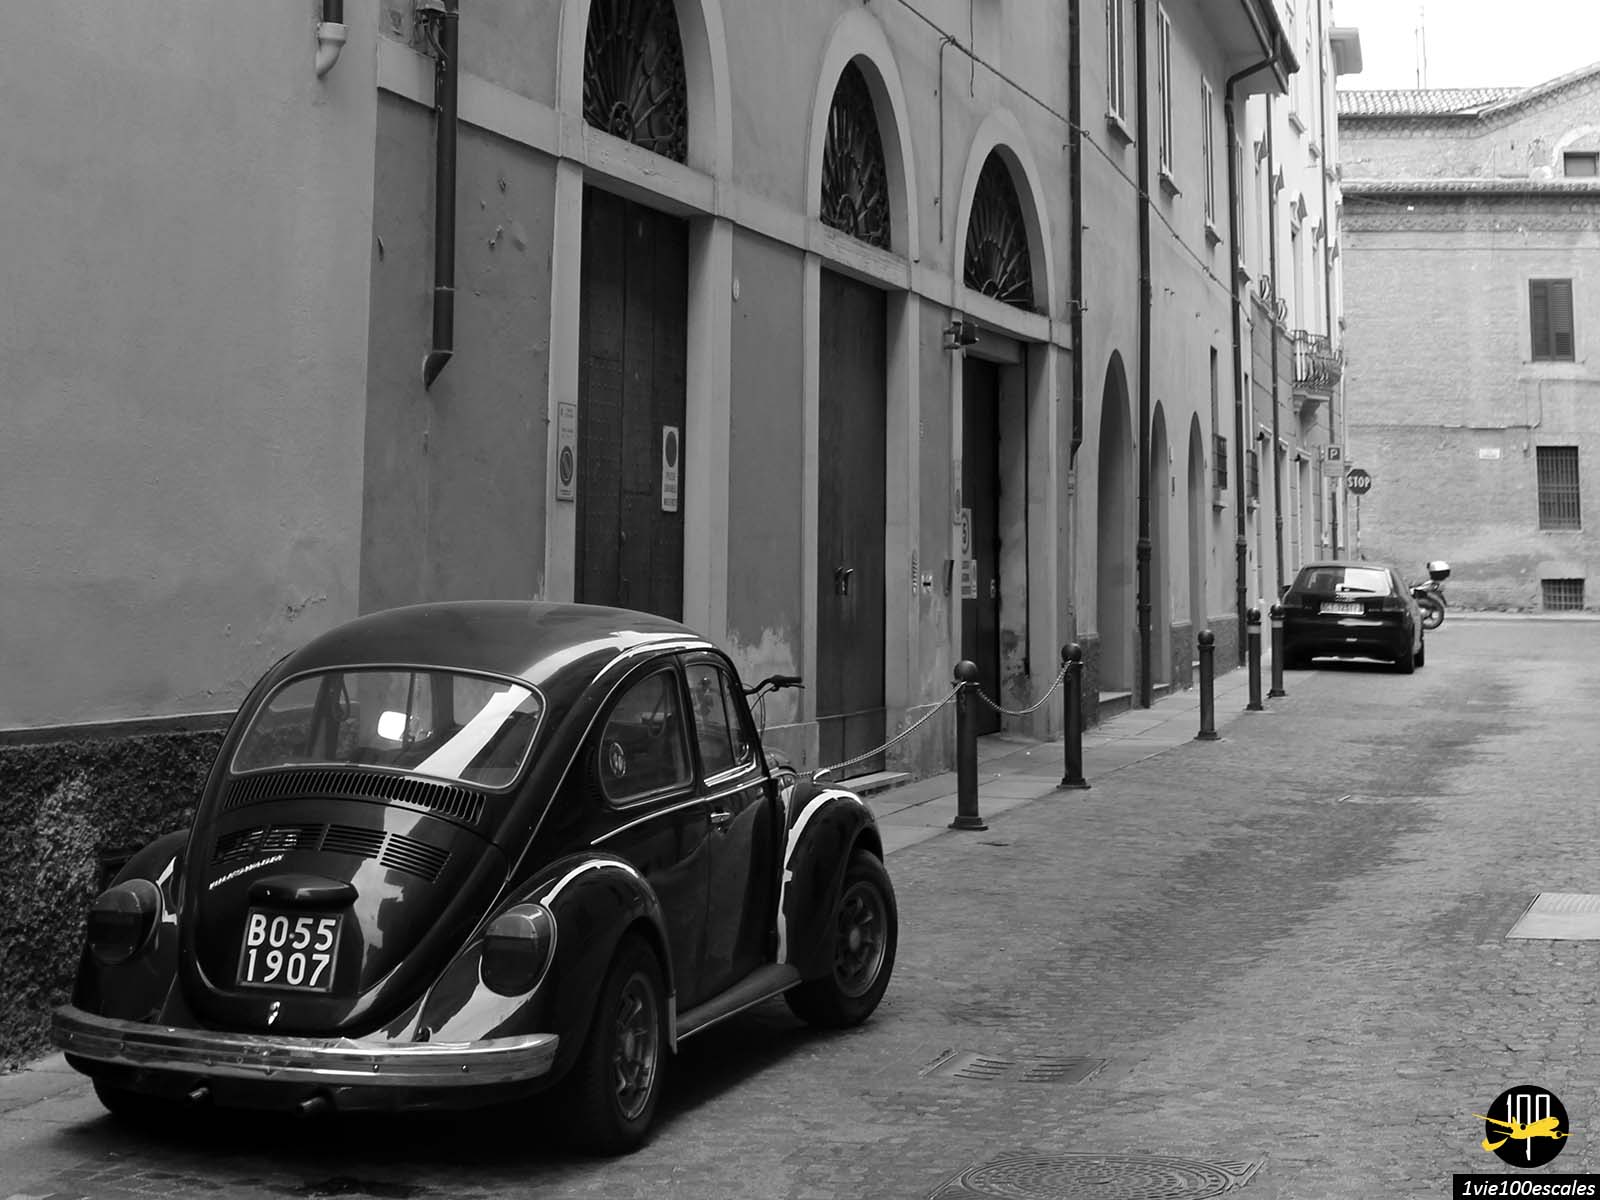 Une photo en noir et blanc d’une coccinelle VW garée dans une rue.